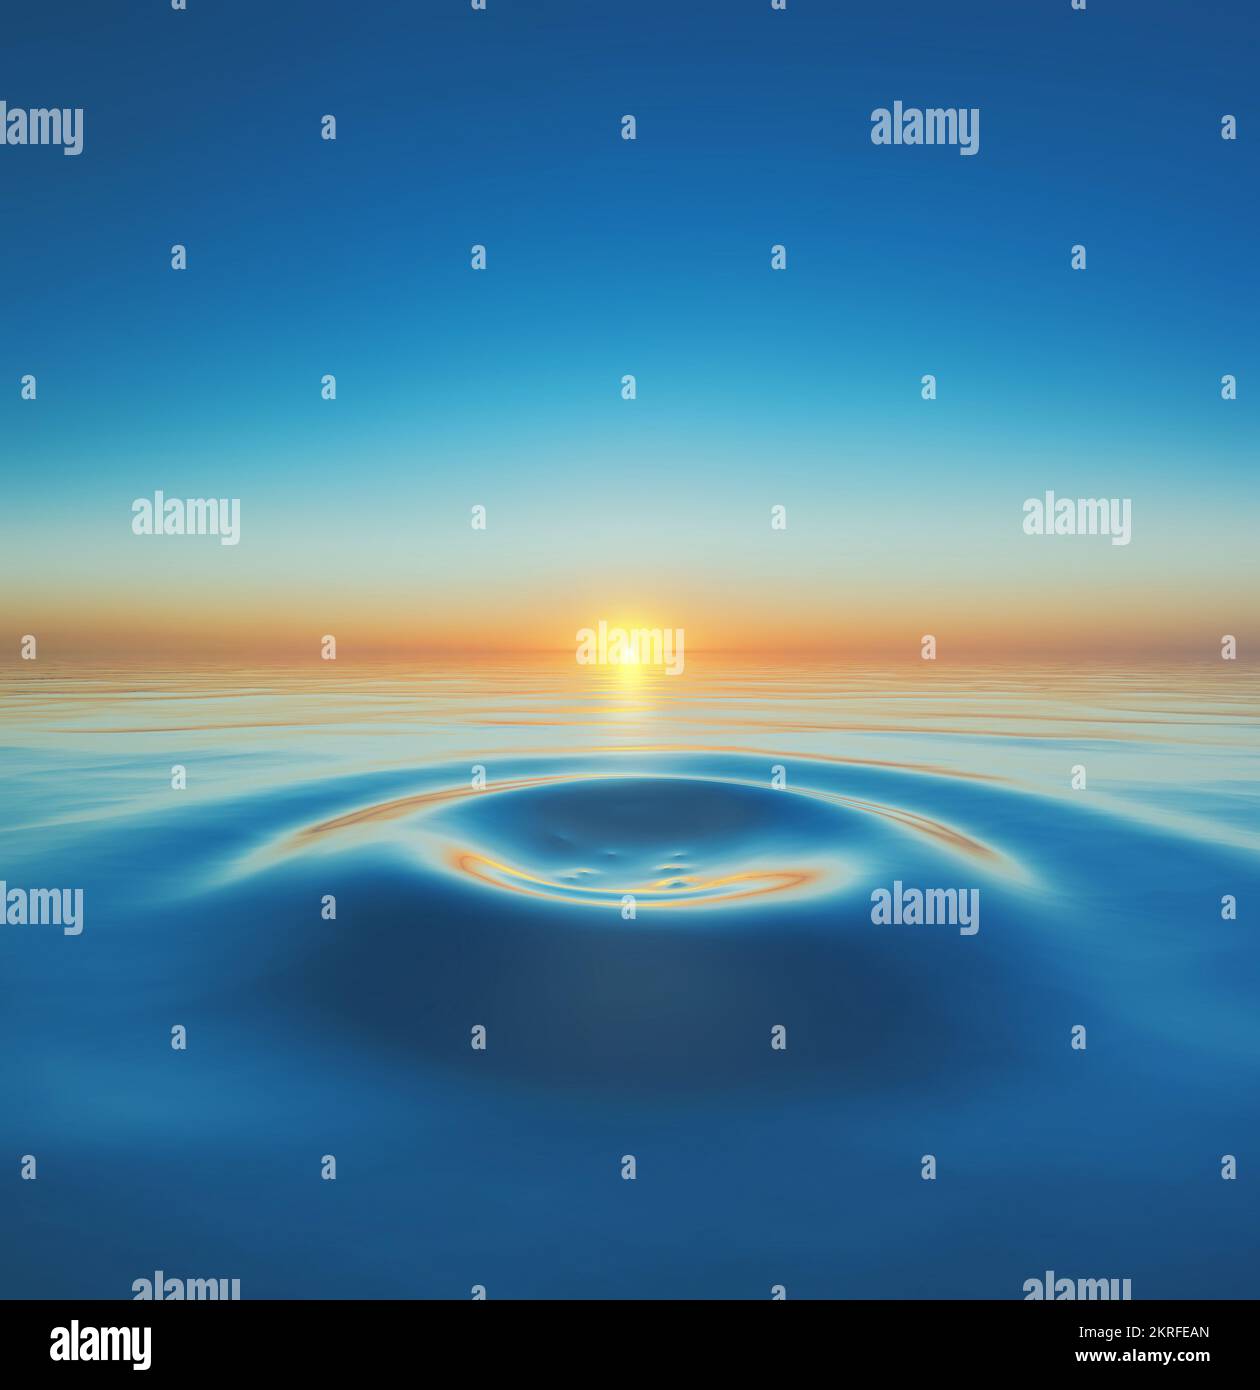 Klarer blauer Himmel und Sonne reflektiert auf Wellen in kaltem blauem Wasser Stockfoto